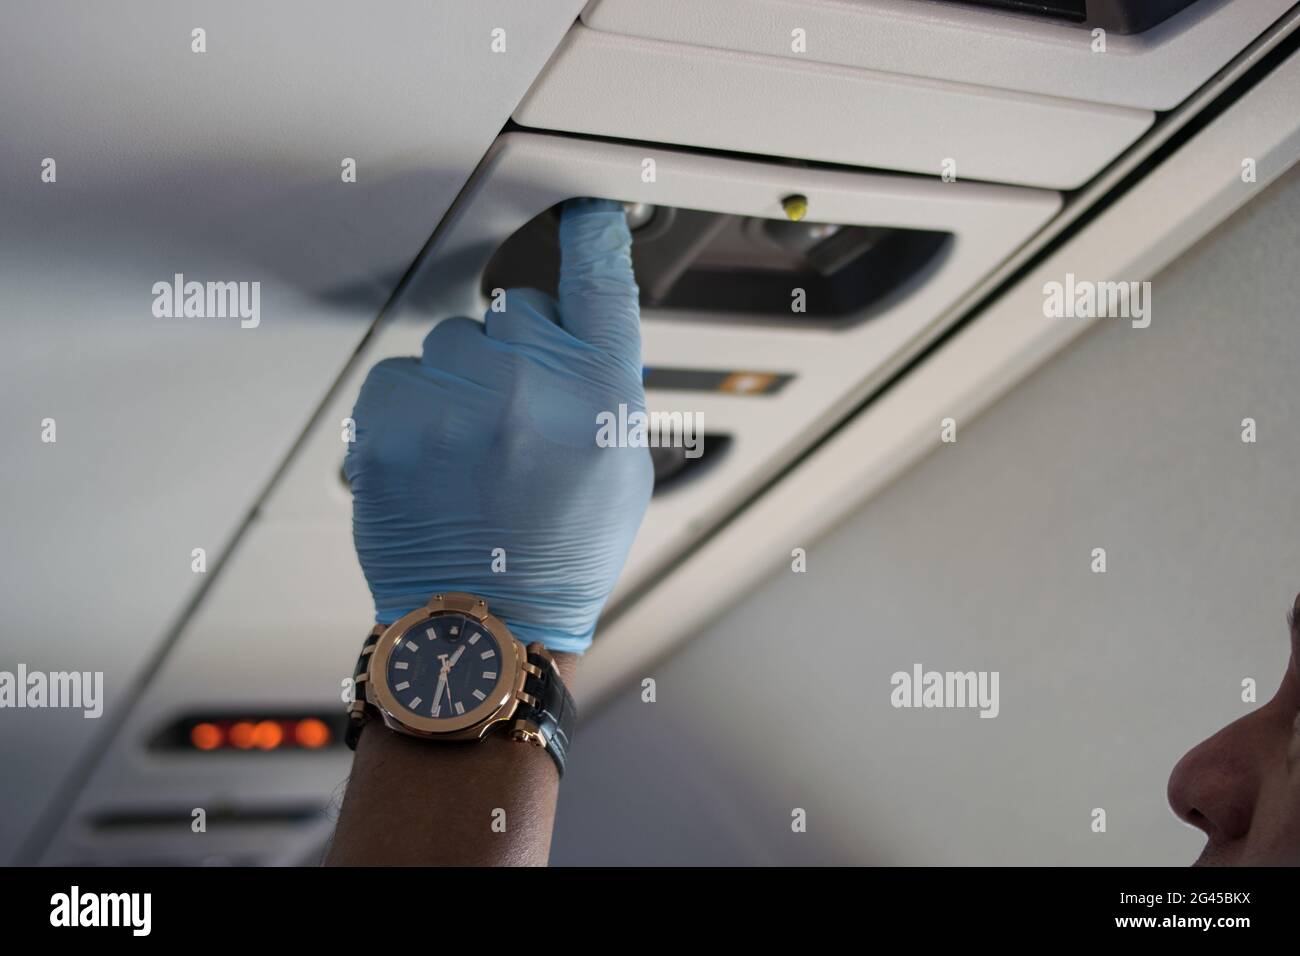 Un homme utilisant un ensemble de gants chirurgicaux appuie sur un bouton dans la cabbine de l'avion alors que le gouvernement colombien a parrainé des vols de rapatriement gratuits vers la Colombie admist le nouvel épidémie de coronavirus (COVID-19) et le résultat de vols commerciaux au sol, à Miami, Floride, U.S, le 7 août, 2020. Banque D'Images